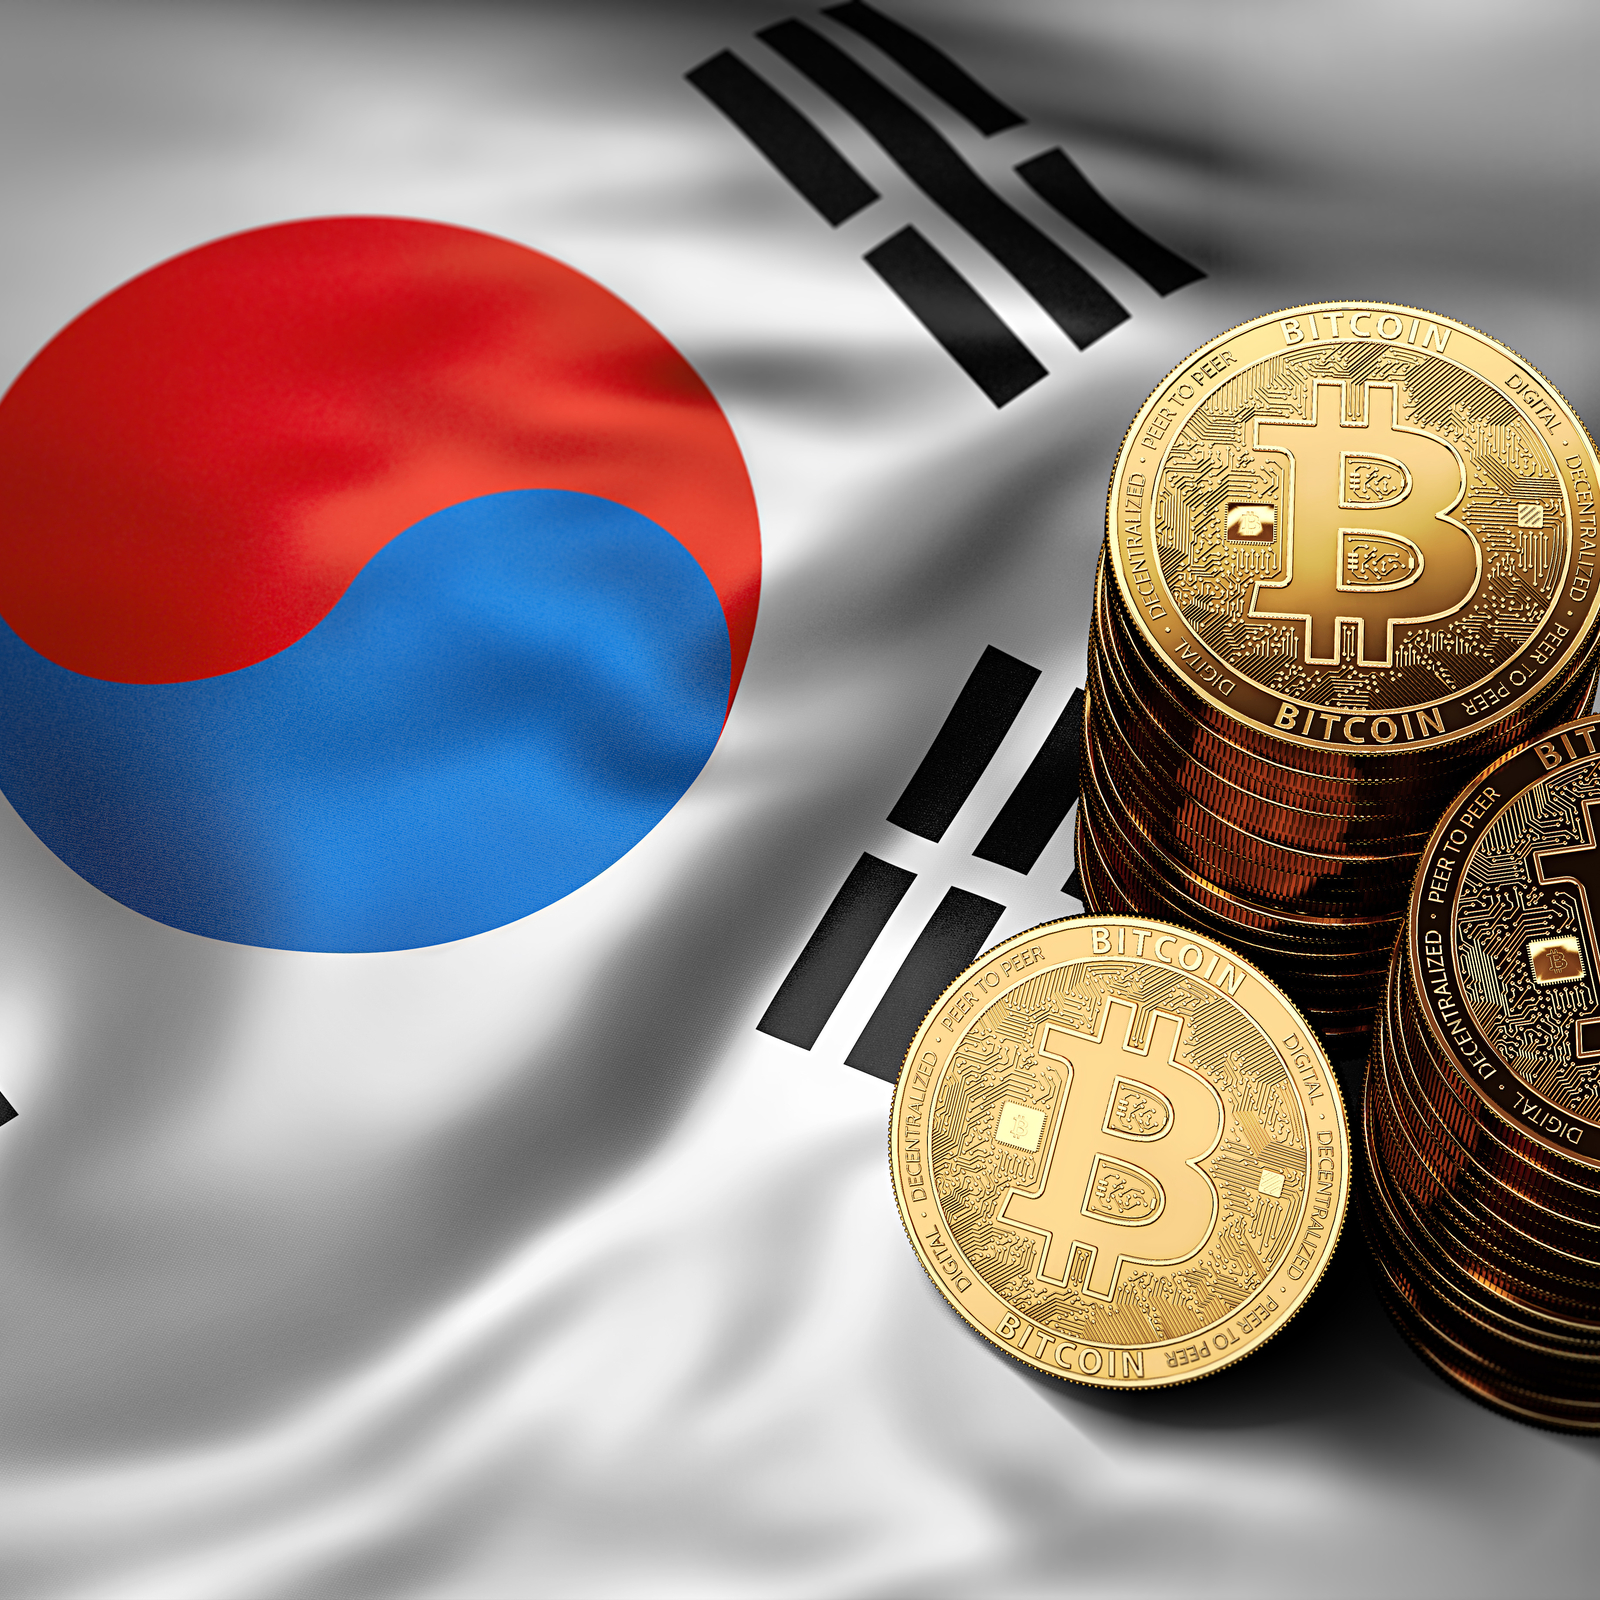 la corea del sud ban bitcoin trading gare di oggi btc